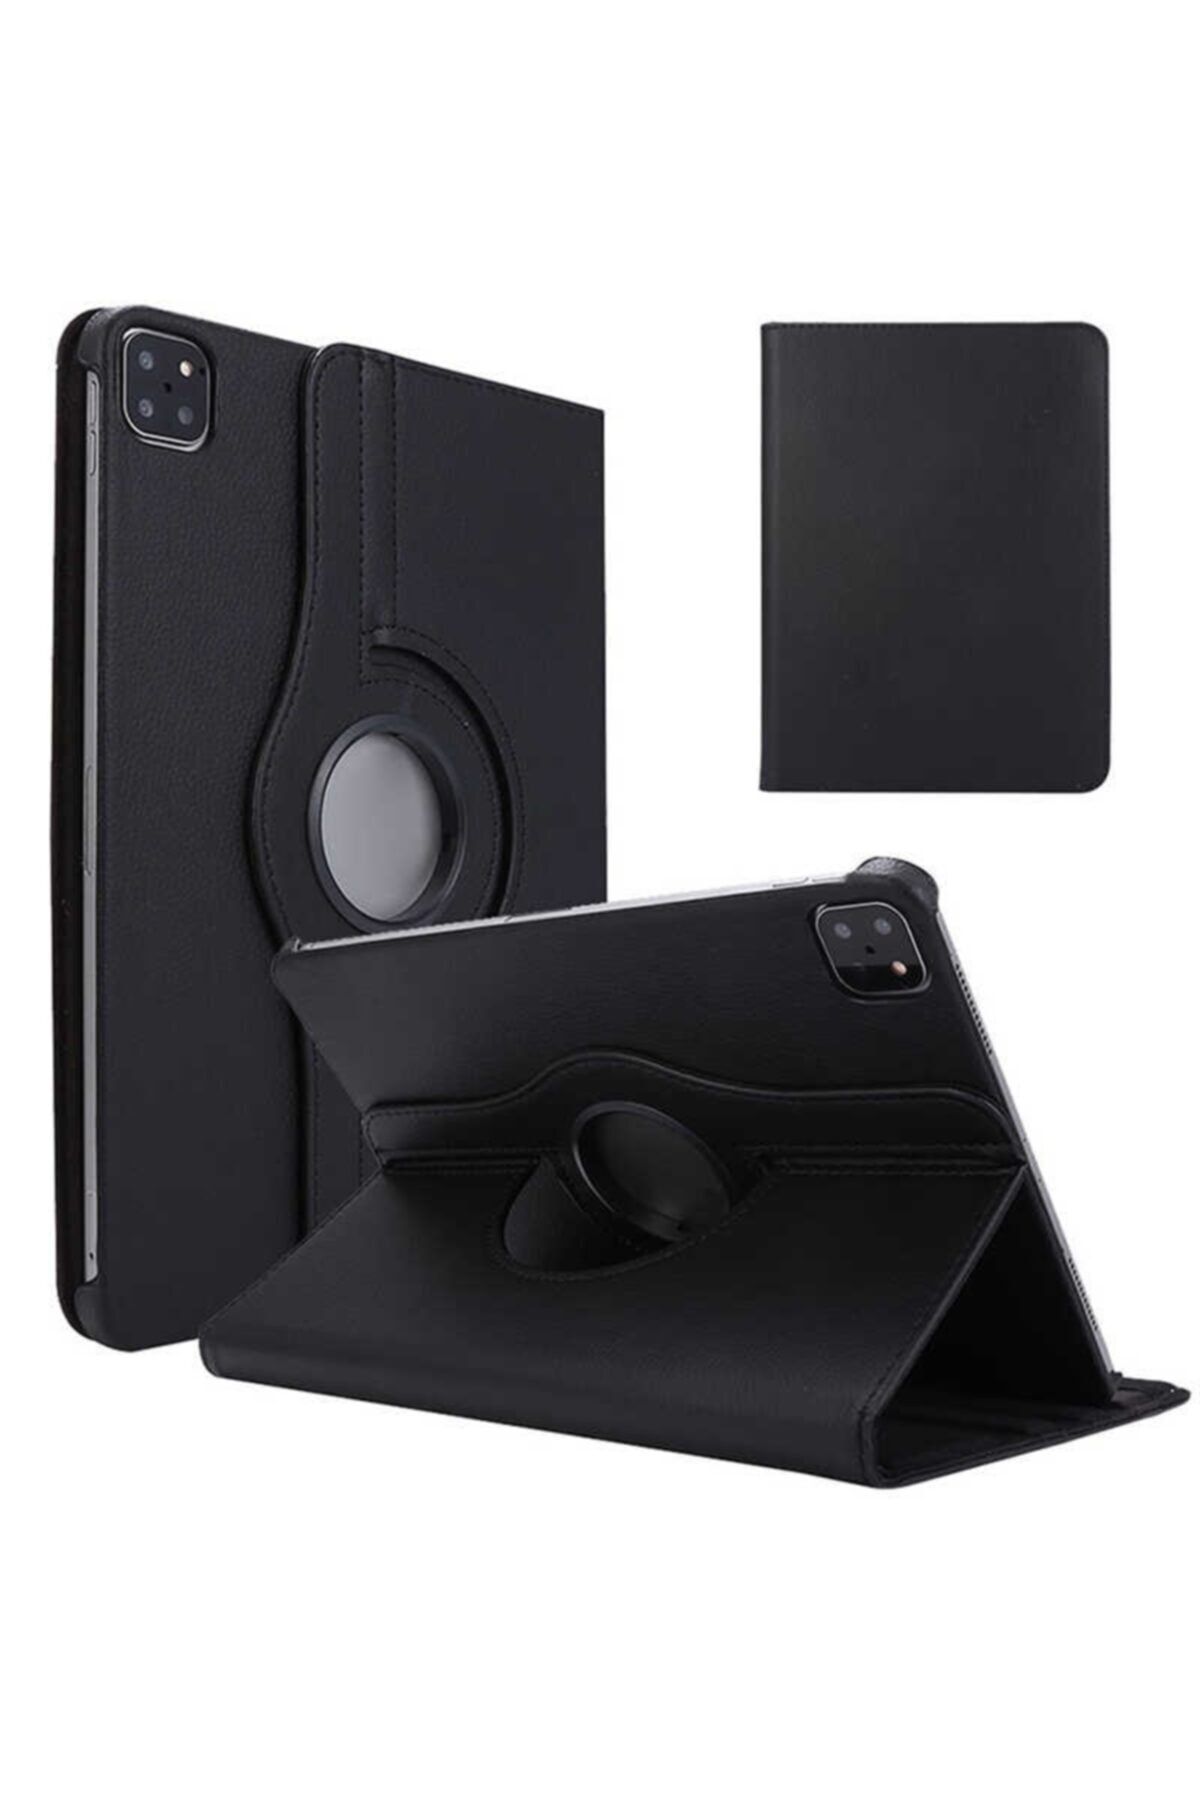 Mobilteam Apple Ipad Pro 11 2020 Dönebilen Standlı Kılıf - Siyah